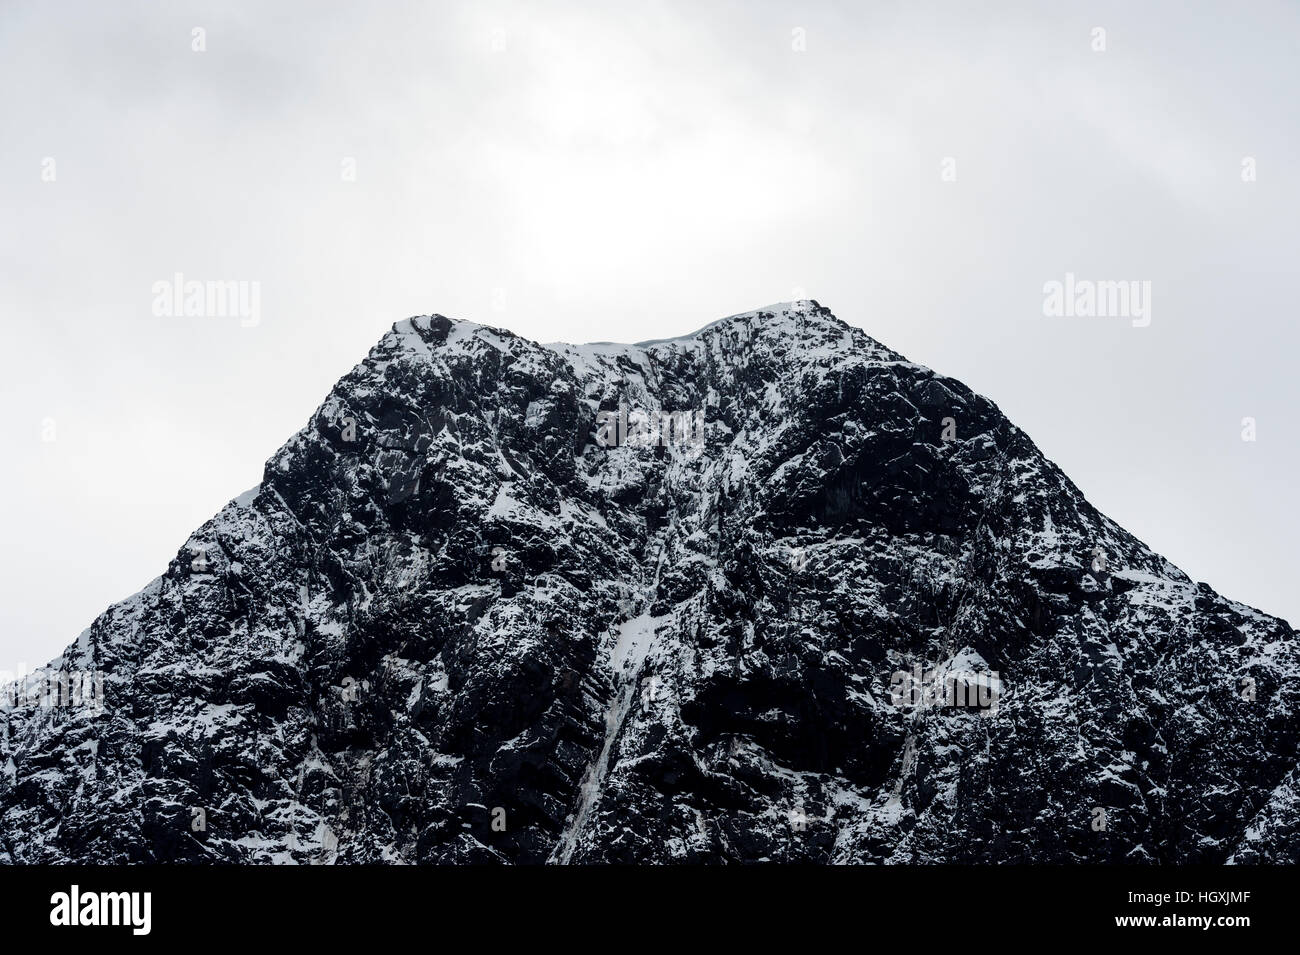 Un sommet de montagne en forme de cône, saupoudrés de neige et de glace. Banque D'Images